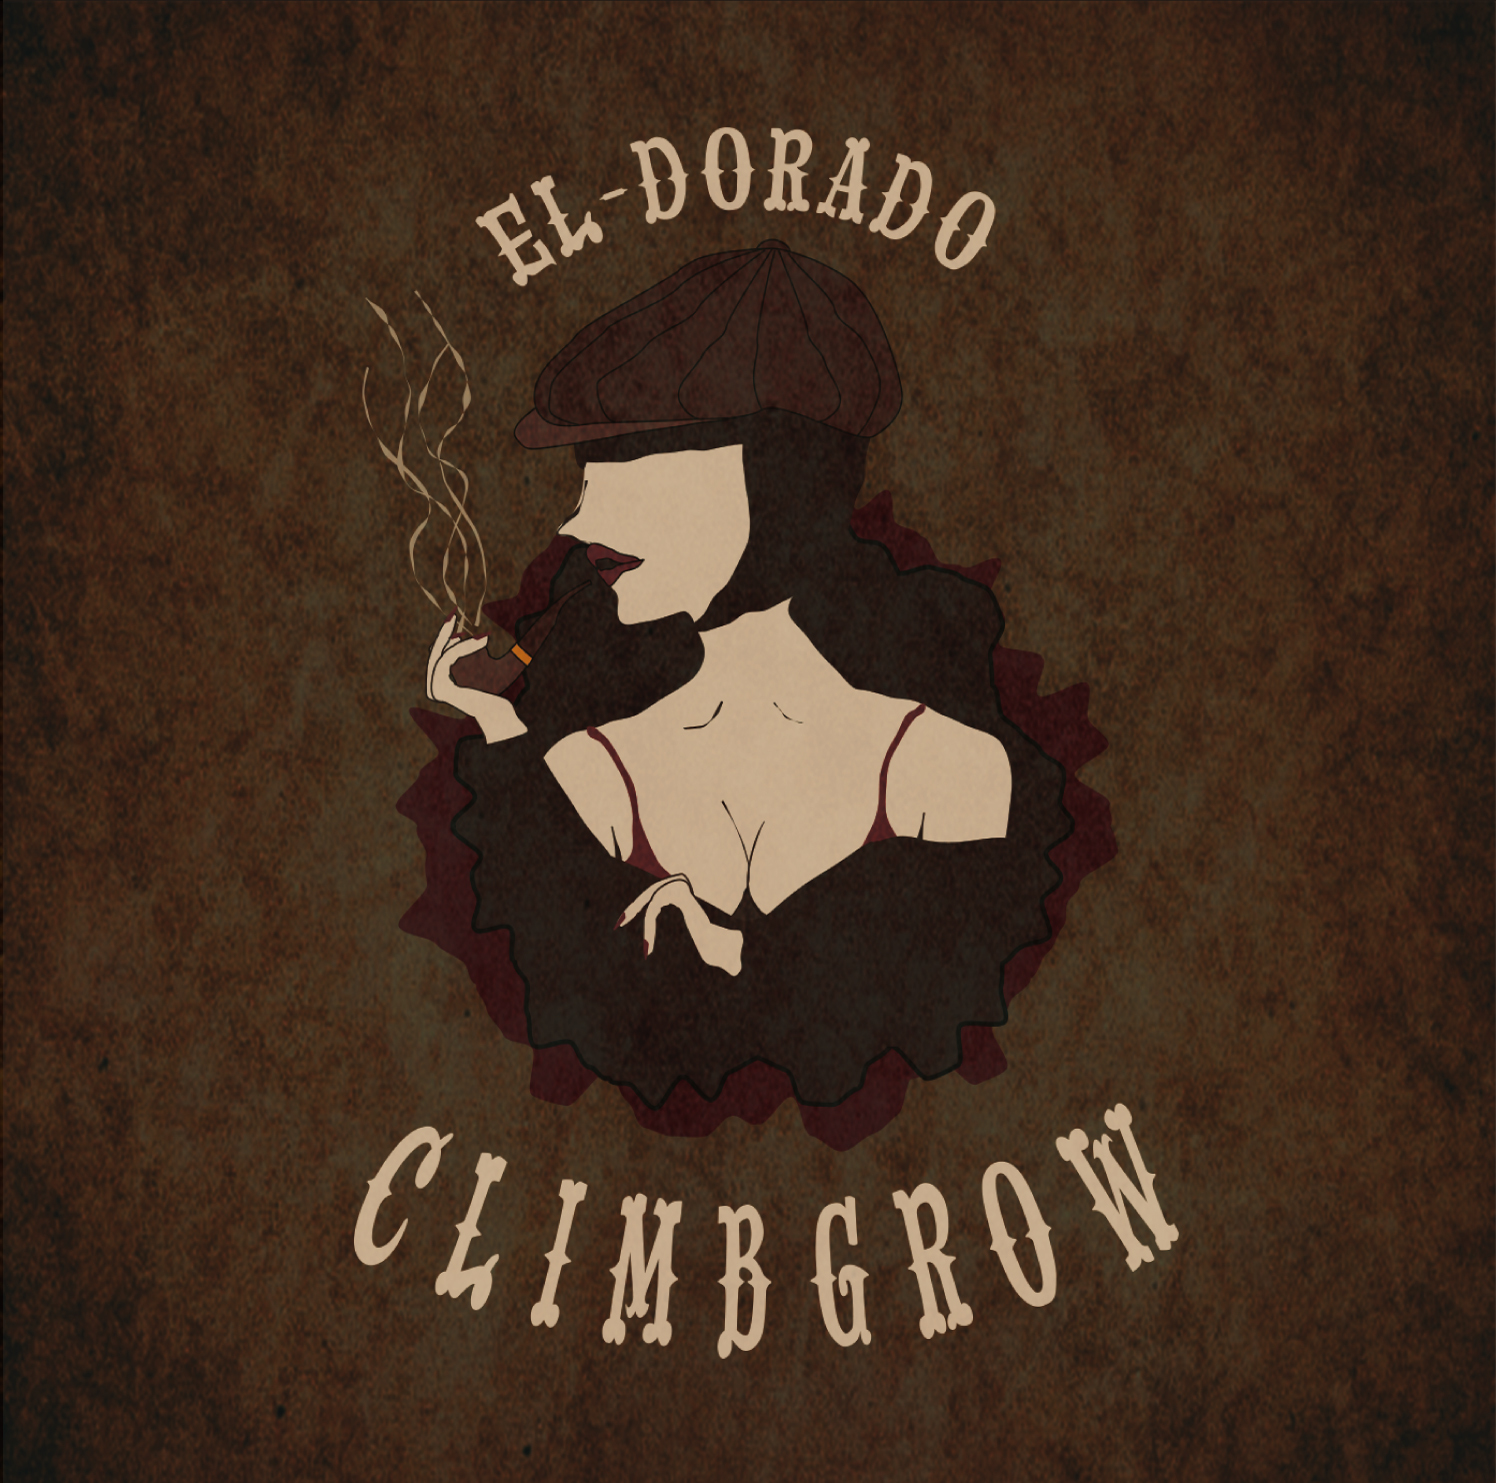 climbgrow『EL-DORADO』